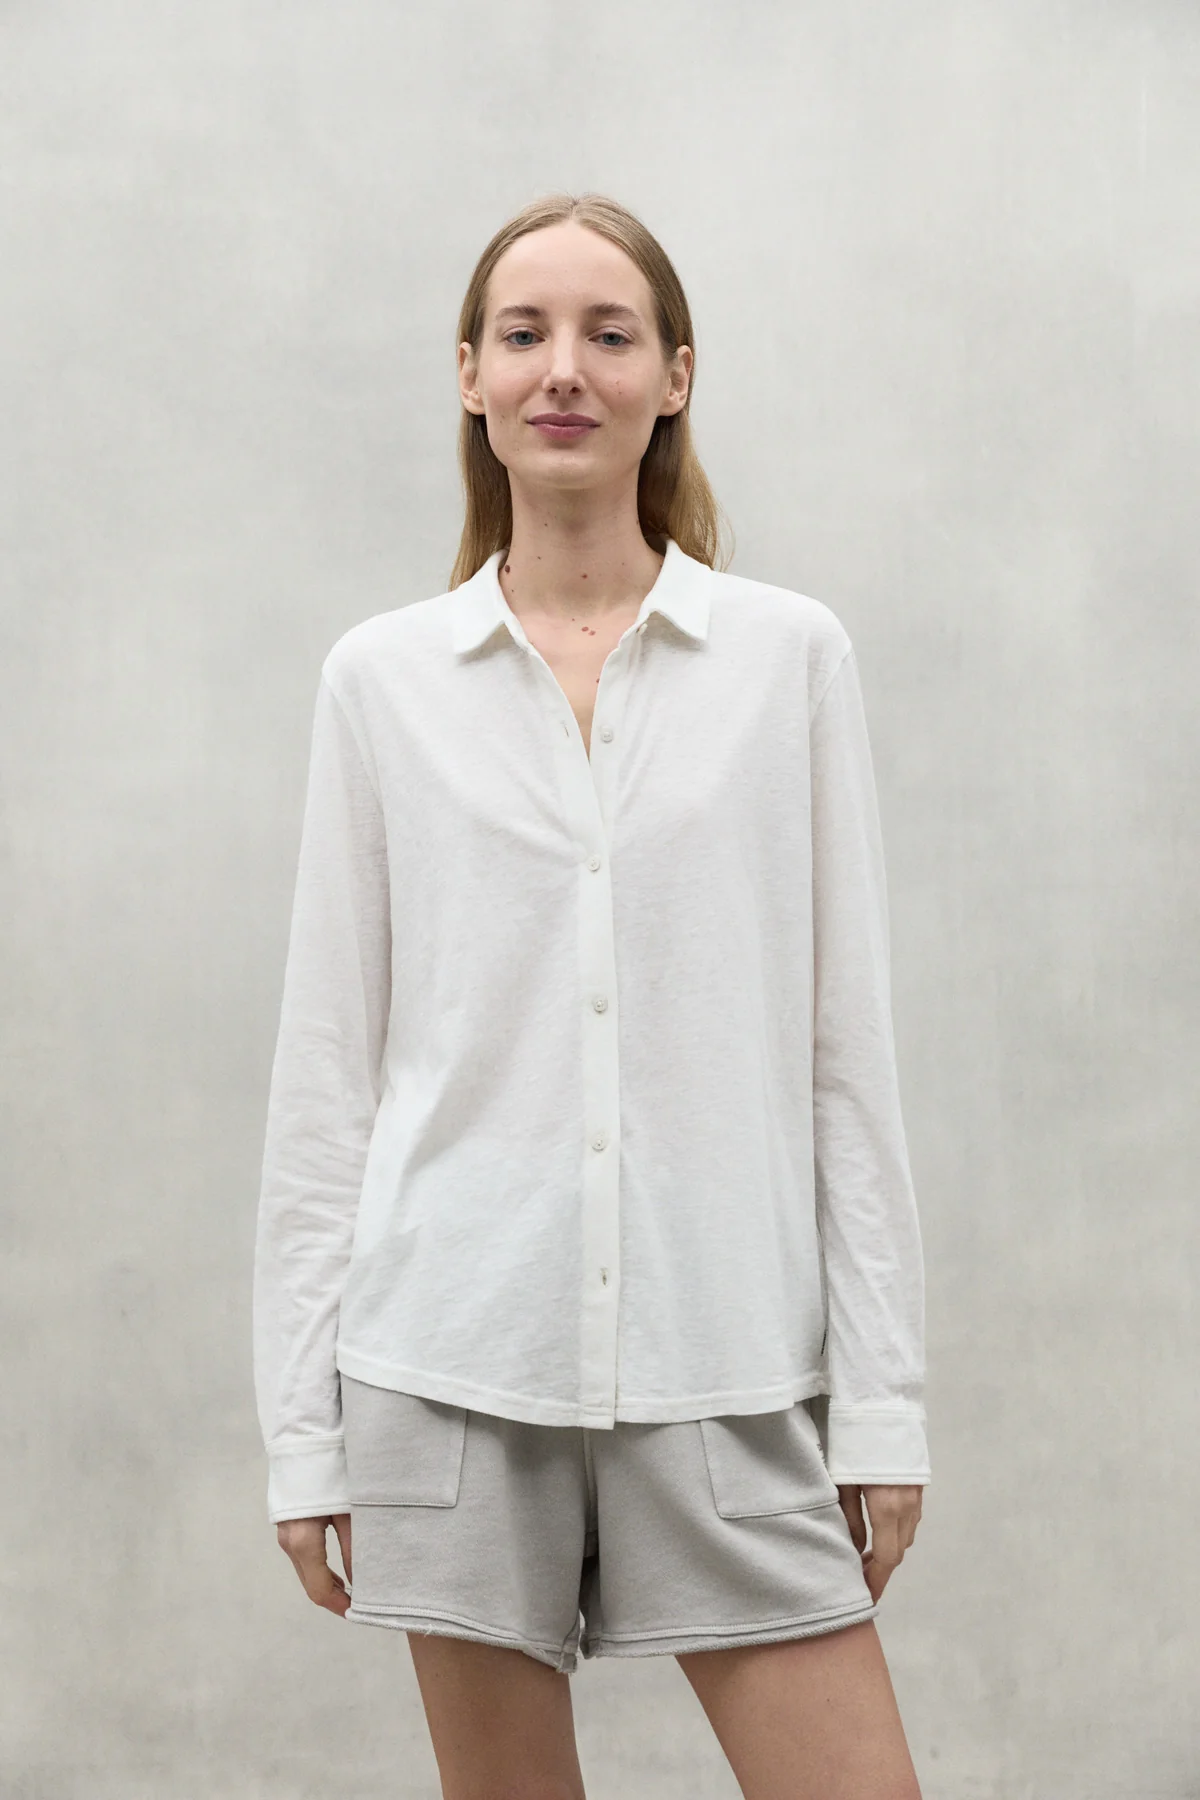 ECOALF camisa en algodón colo blanco